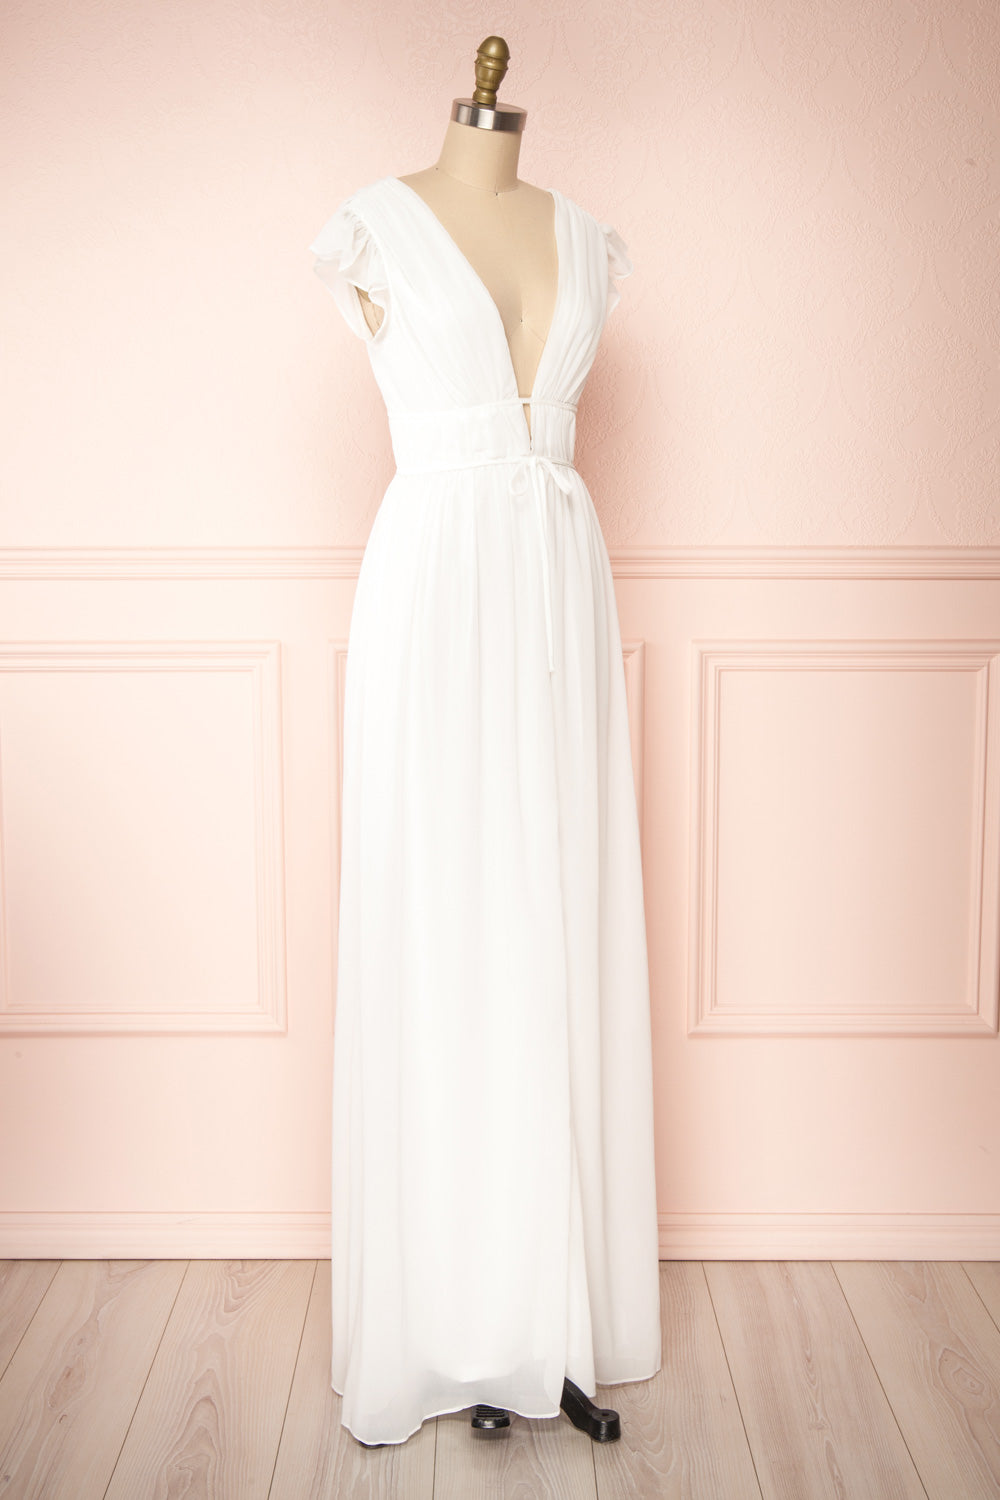 Formal Dress Pleated Sleeveless V-Neck Chiffon Maxi Dress – MsDressly